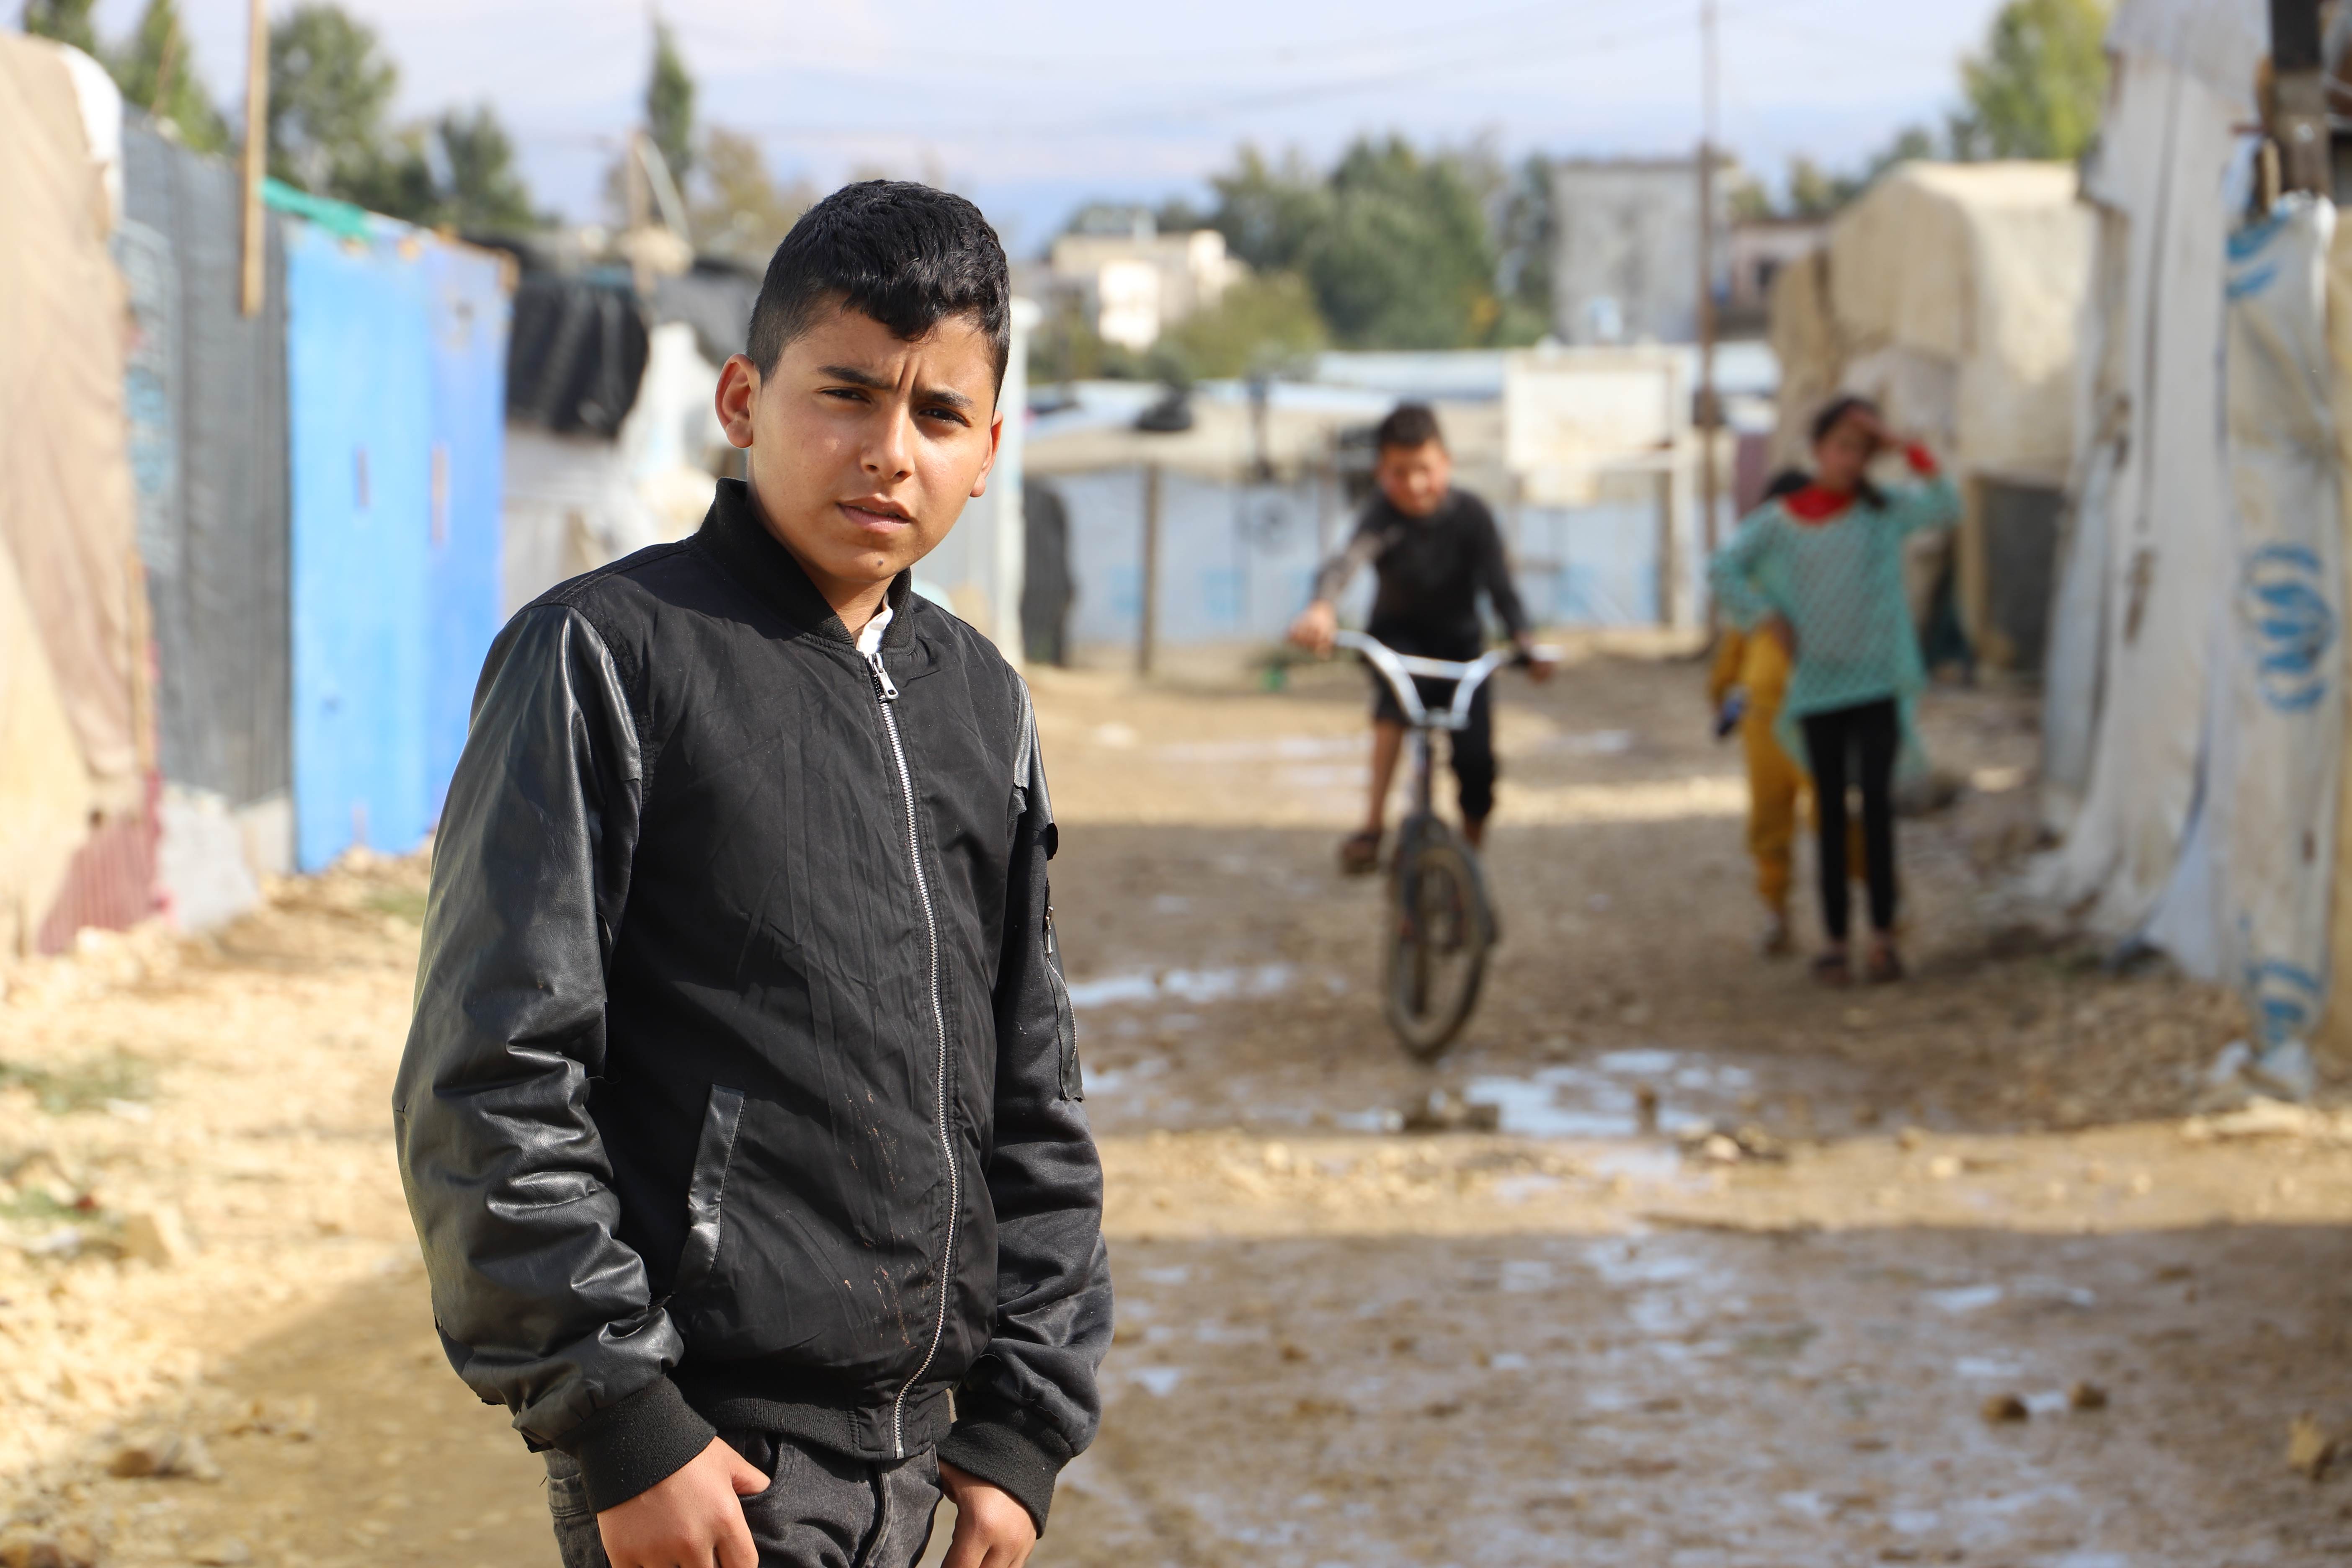 Un niño sirio frente a unas tiendas de campaña en un campo de refugiados en Siria